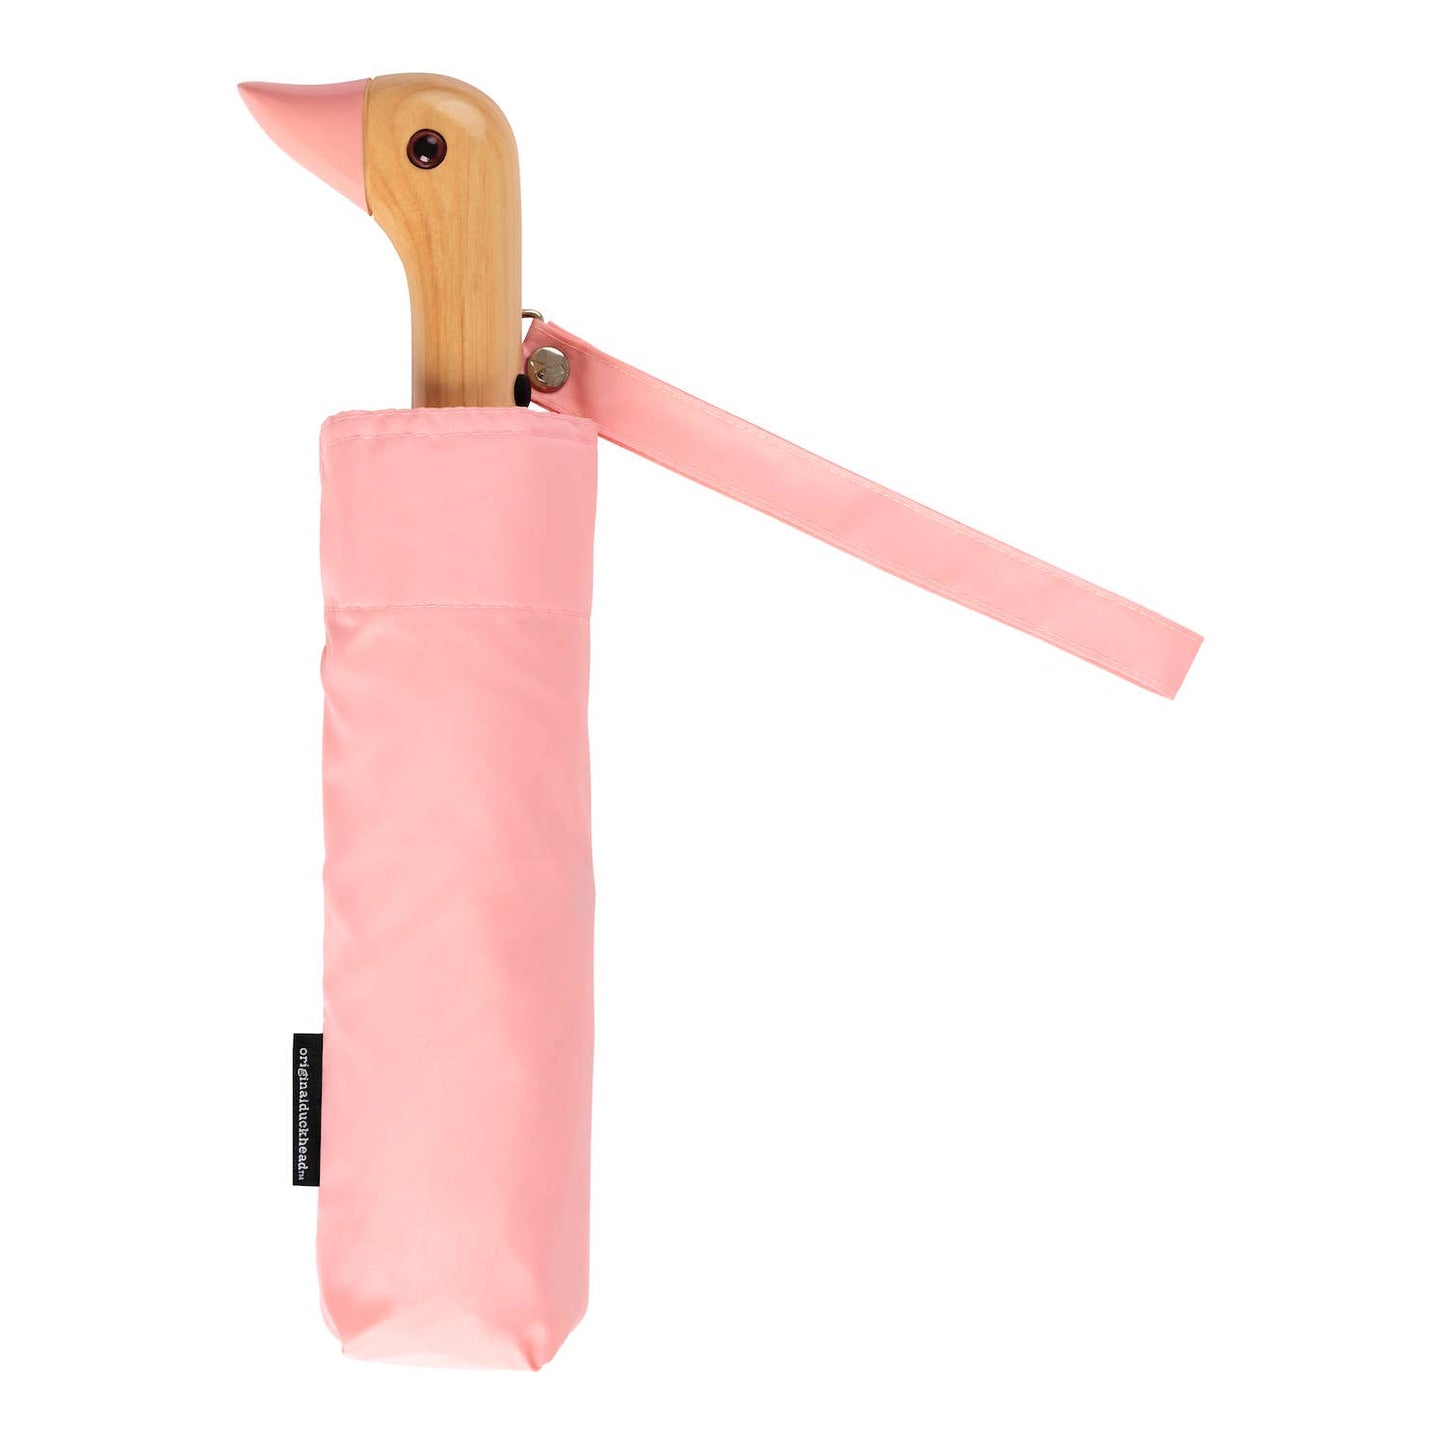 Original Duckhead Umbrella - Pink